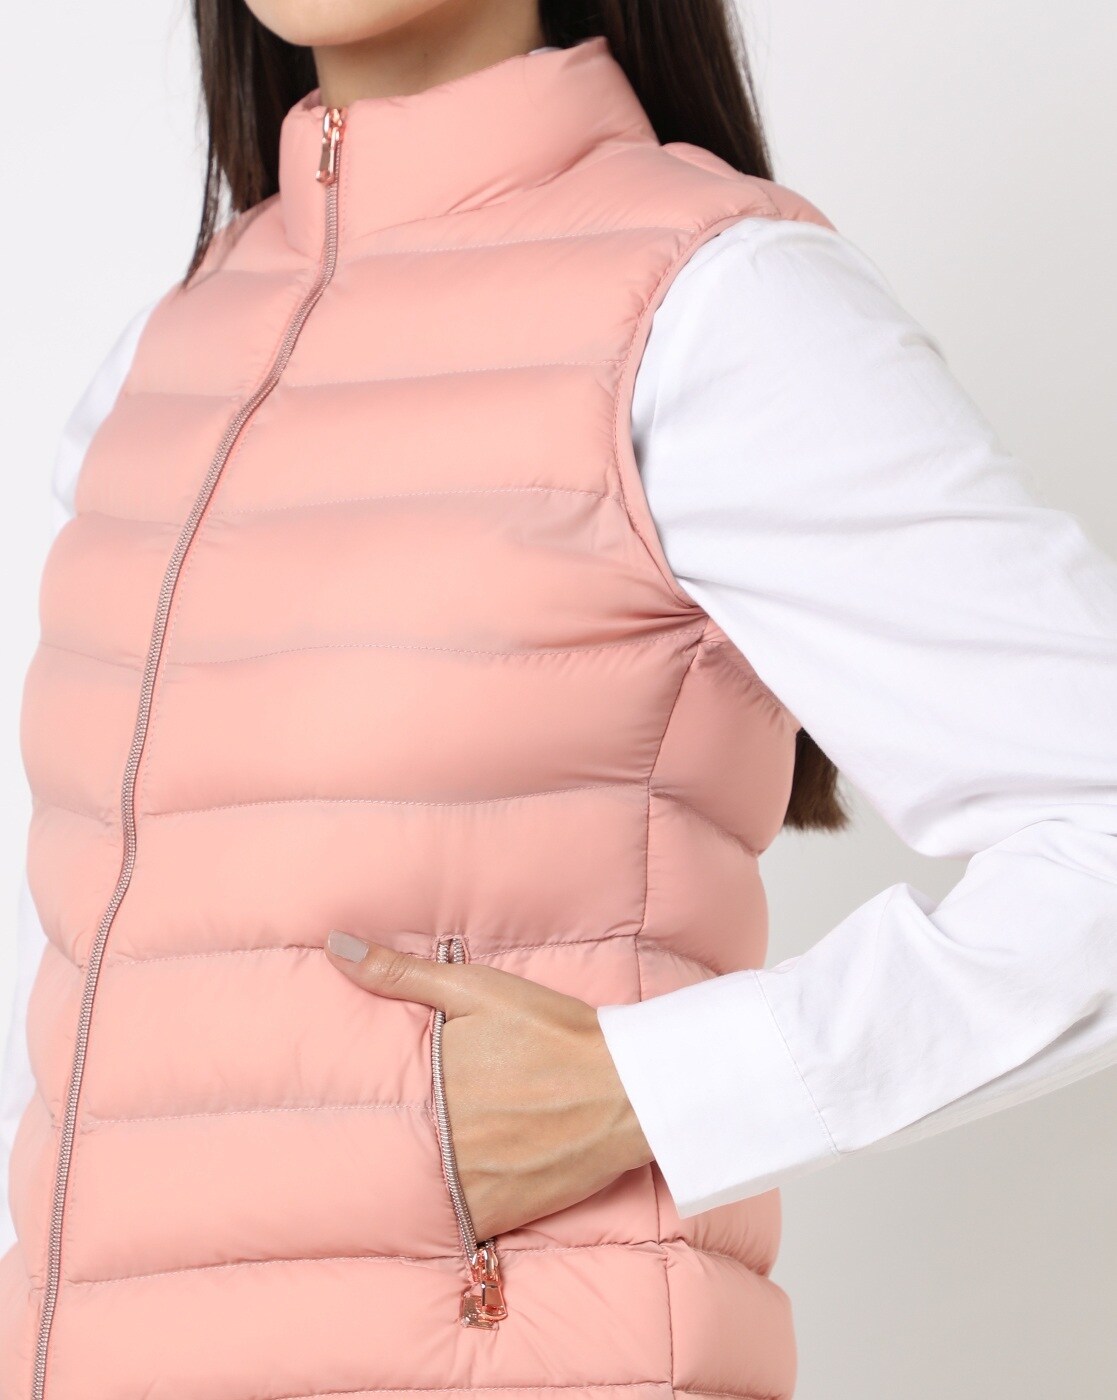 Buy Pink Jackets & Coats for Women by DUKE WOMEN'S Online